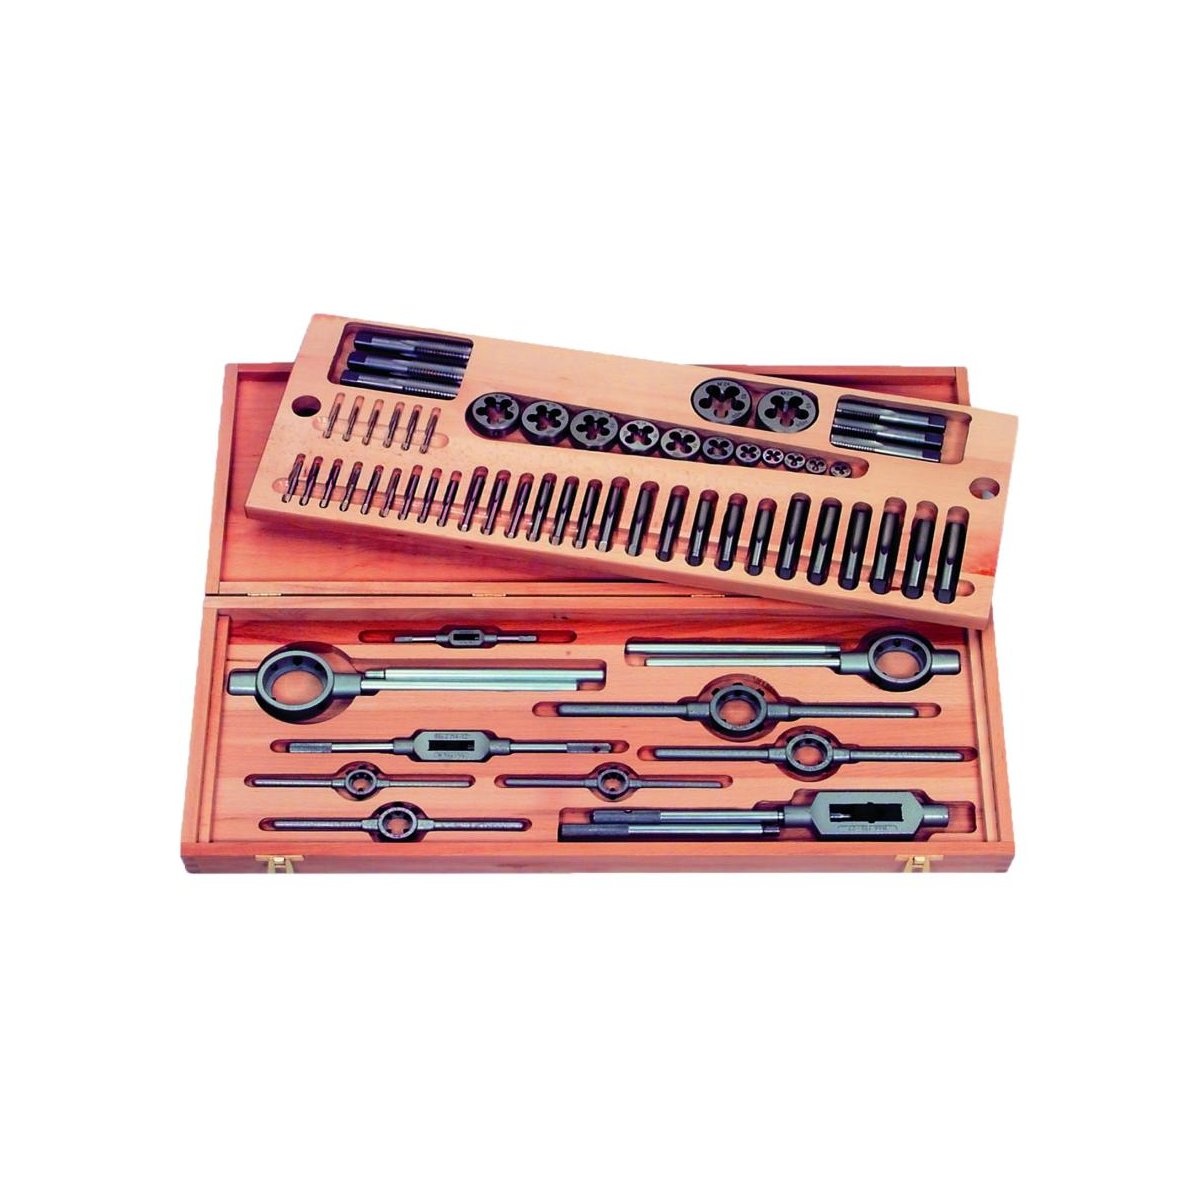 Набор резьбонарезного инструмента No 6010 HSS, 44 пр., BSW 1/8 - 3/4, деревянный кейс